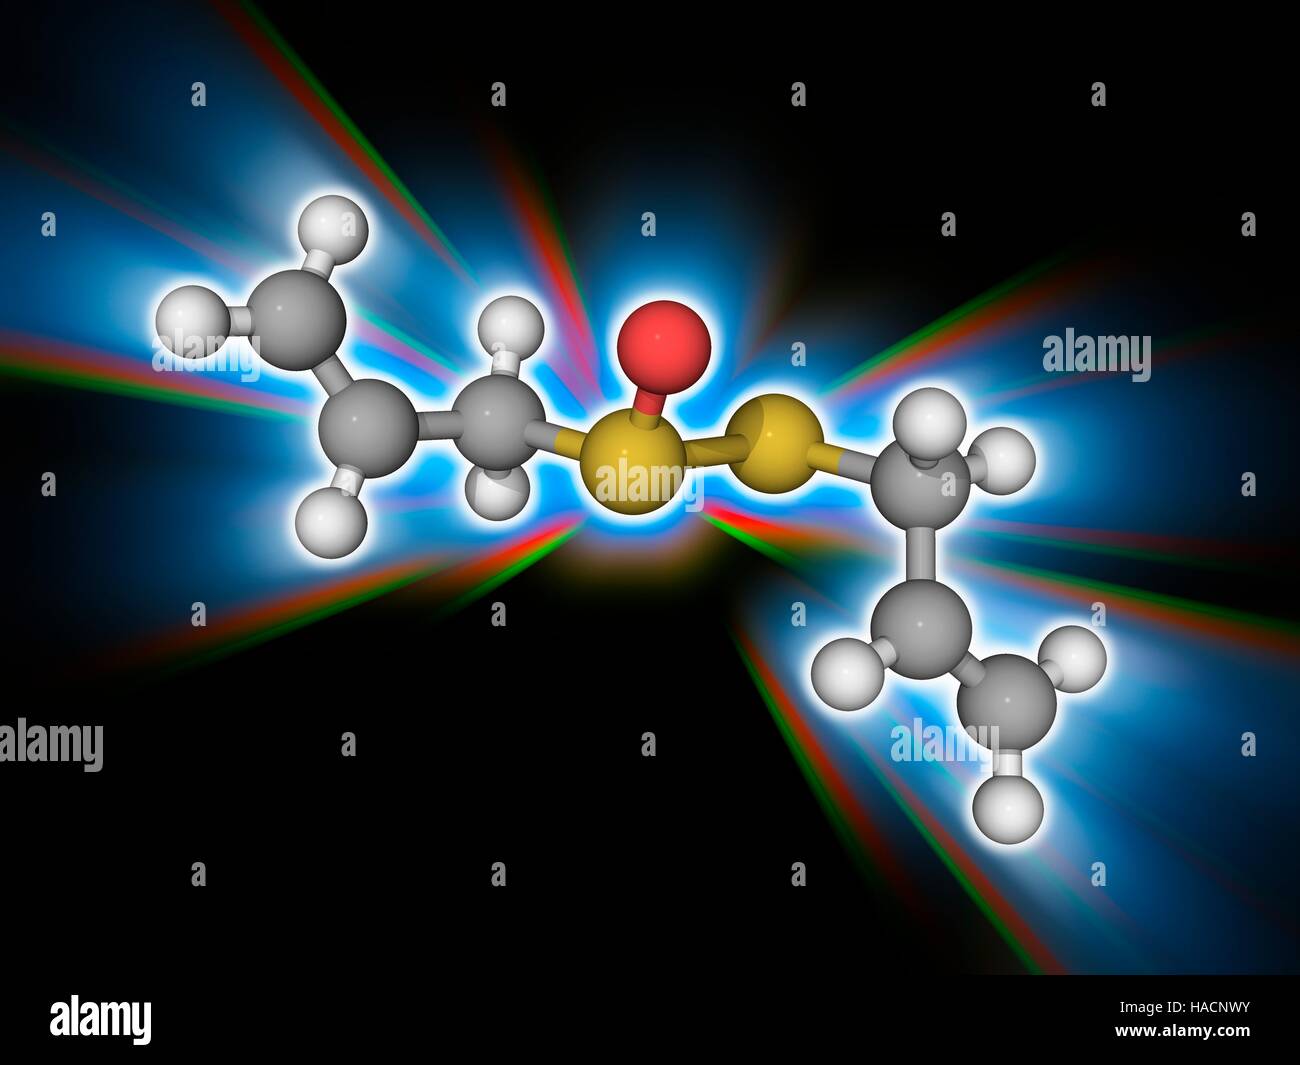 Allicin. Il modello molecolare del composto organosulfur allicin (C6.H10.O.S2). Ottenuto da l'aglio (allium sativum), questo prodotto chimico è antibatterico e antimicotico proprietà. Gli atomi sono rappresentati da sfere e sono codificati a colori: carbonio (grigio), Idrogeno (bianco), Ossigeno (rosso) e zolfo (giallo). Illustrazione. Foto Stock